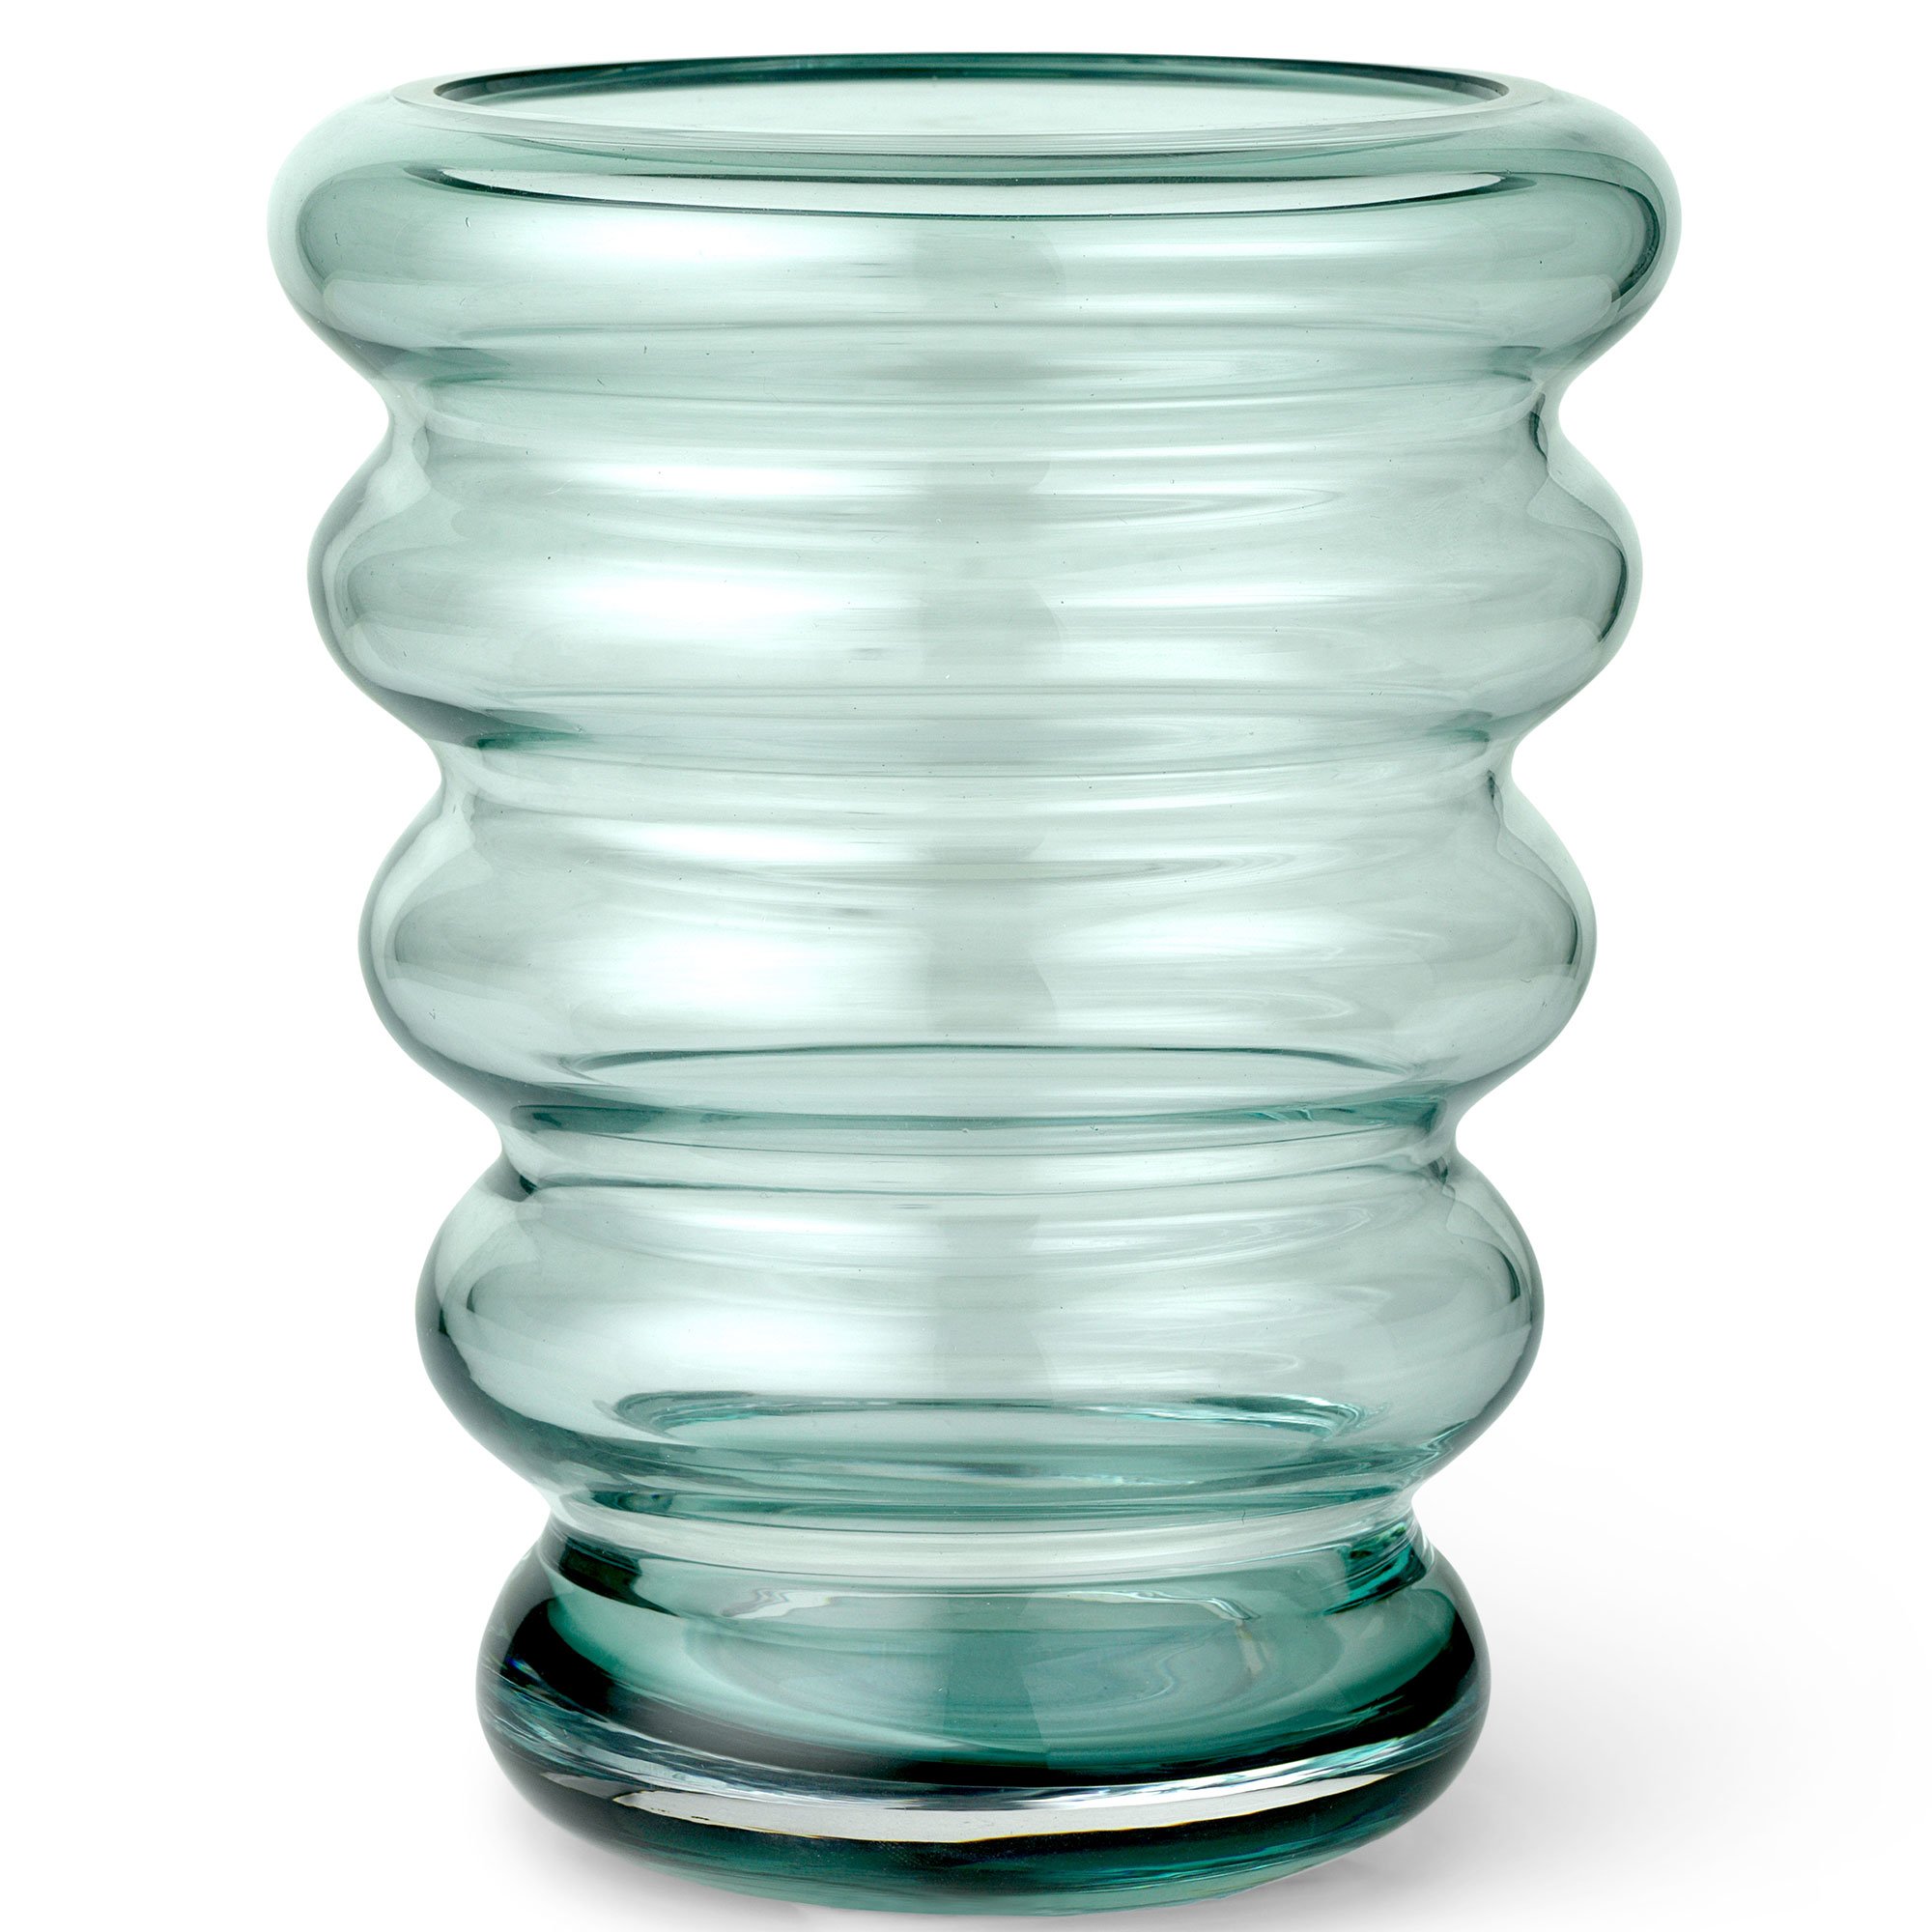 2: Rosendahl Infinity vase, 20 cm, mint